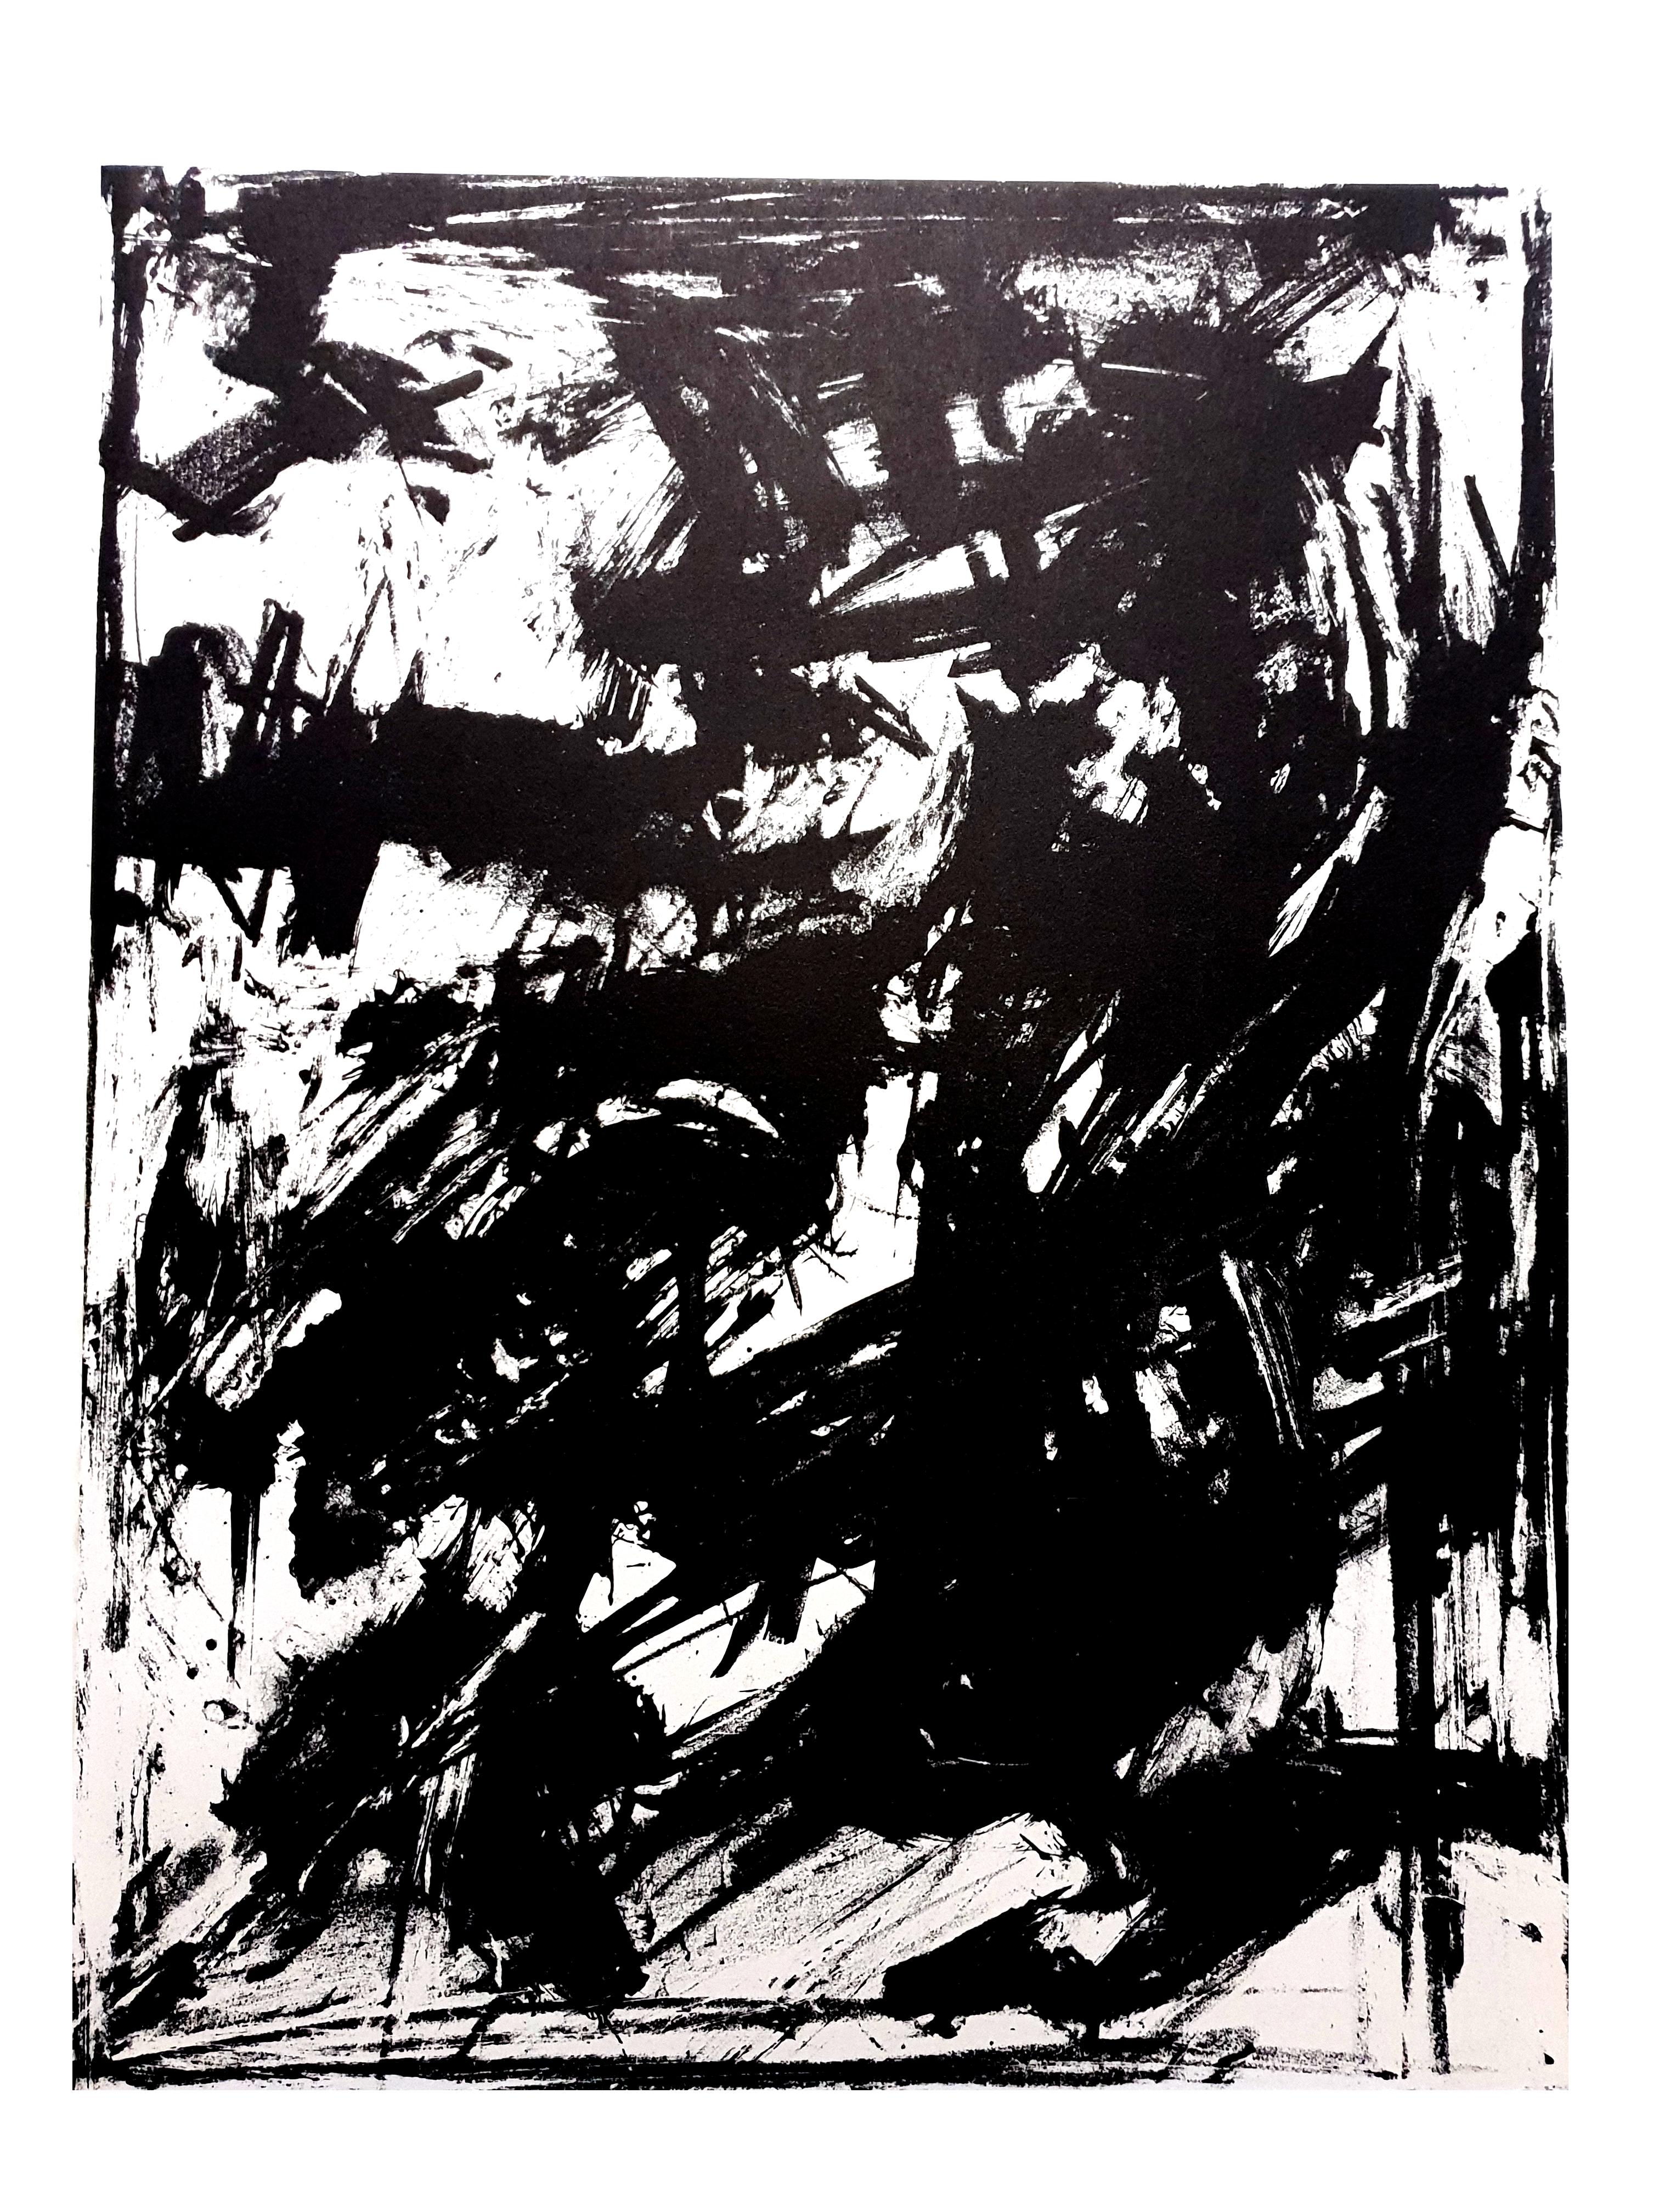 Emilio Vedova - Original-Lithographie
Abstraktion
1961
Aus der Kunstzeitschrift XXe Siecle
Abmessungen: 32 x 24
Ausgabe: G. di San Lazzaro.
Unsigniert und nicht nummeriert wie ausgestellt